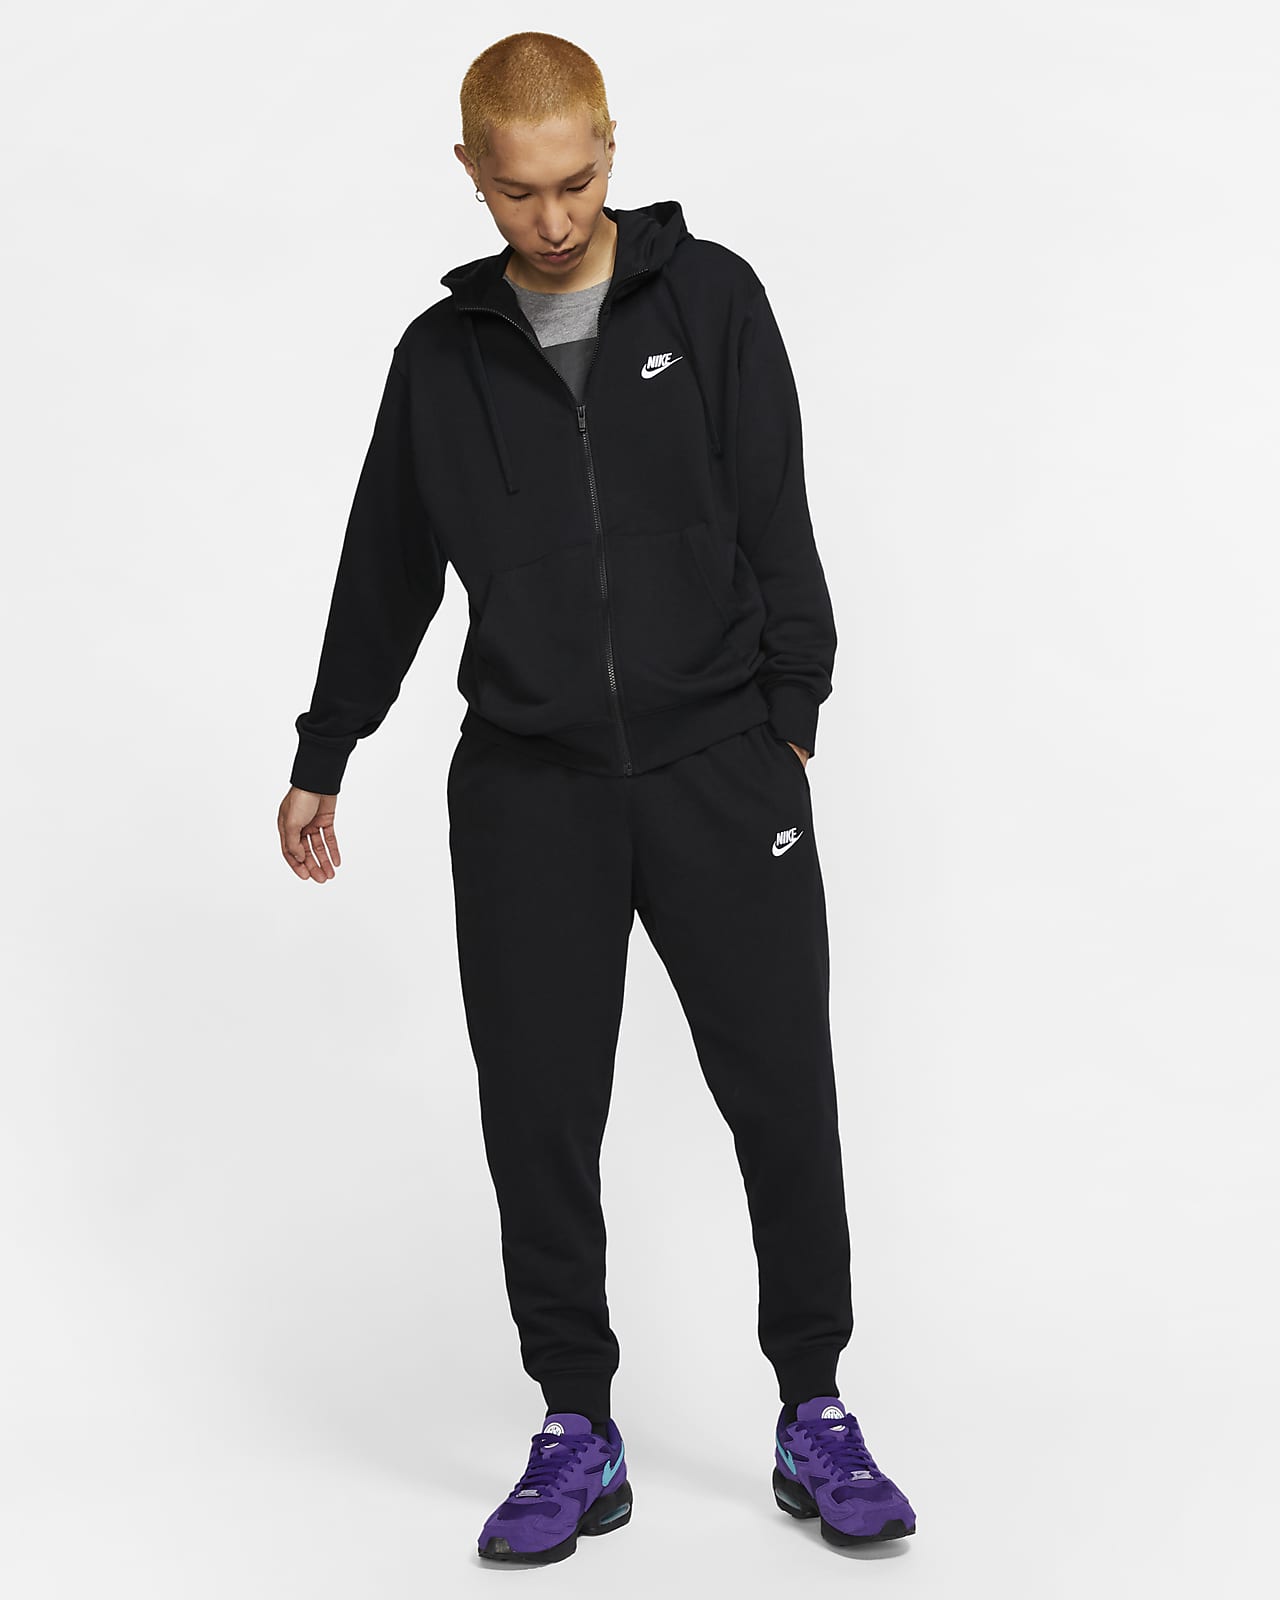 Pantalons de Jogging pour Homme en Promotion. Nike FR